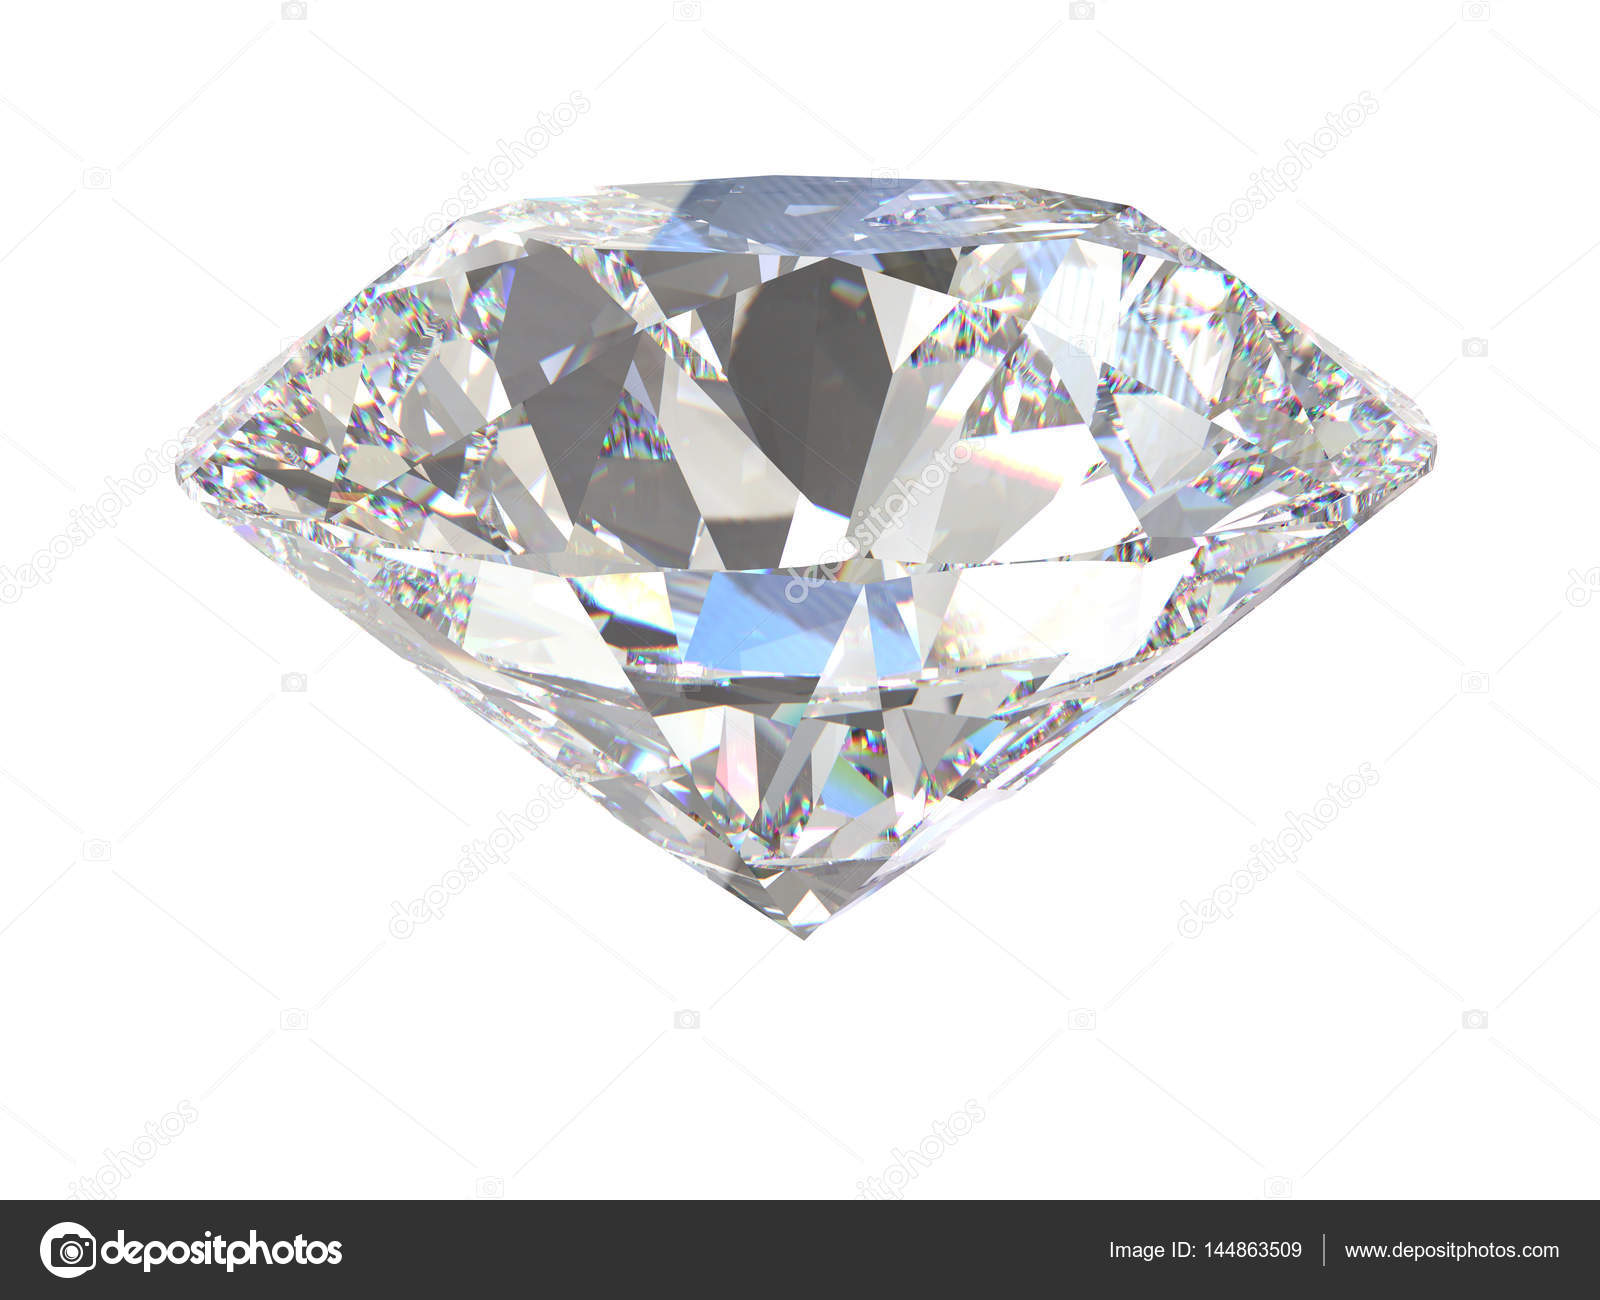 Sự vĩ đại và quý báu của kim cương được khắc họa trọn vẹn trong hình ảnh về một chiếc nhẫn được trang trí bởi kim cương lớn. Khám phá ngay vẻ đẹp của nó và cảm nhận sự trang trọng, quý phái đến từ từng chi tiết nhỏ nhất!